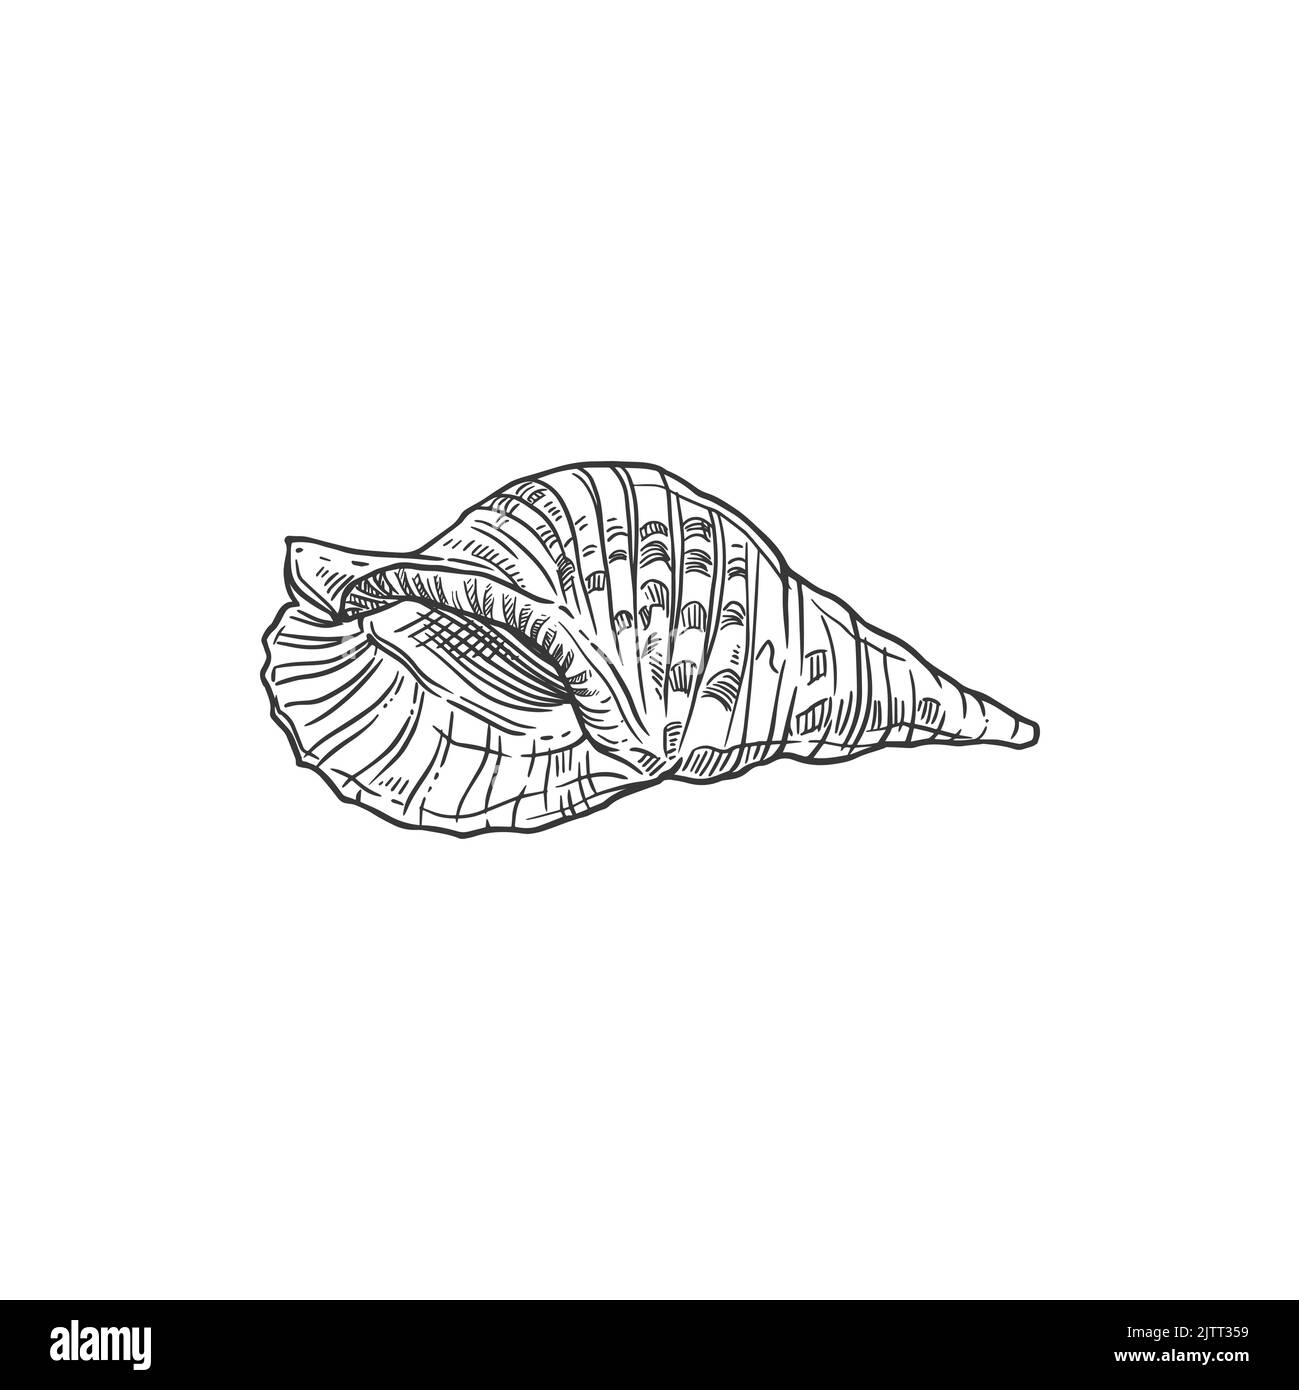 Skizze Meeresmuschel, Vektormuschel, gravierte Meeresmuschel oder Schalentiere. Karibische triton Muschel Unterwasser Hand gezeichnet Mollusk isoliert Design-Element auf Stock Vektor